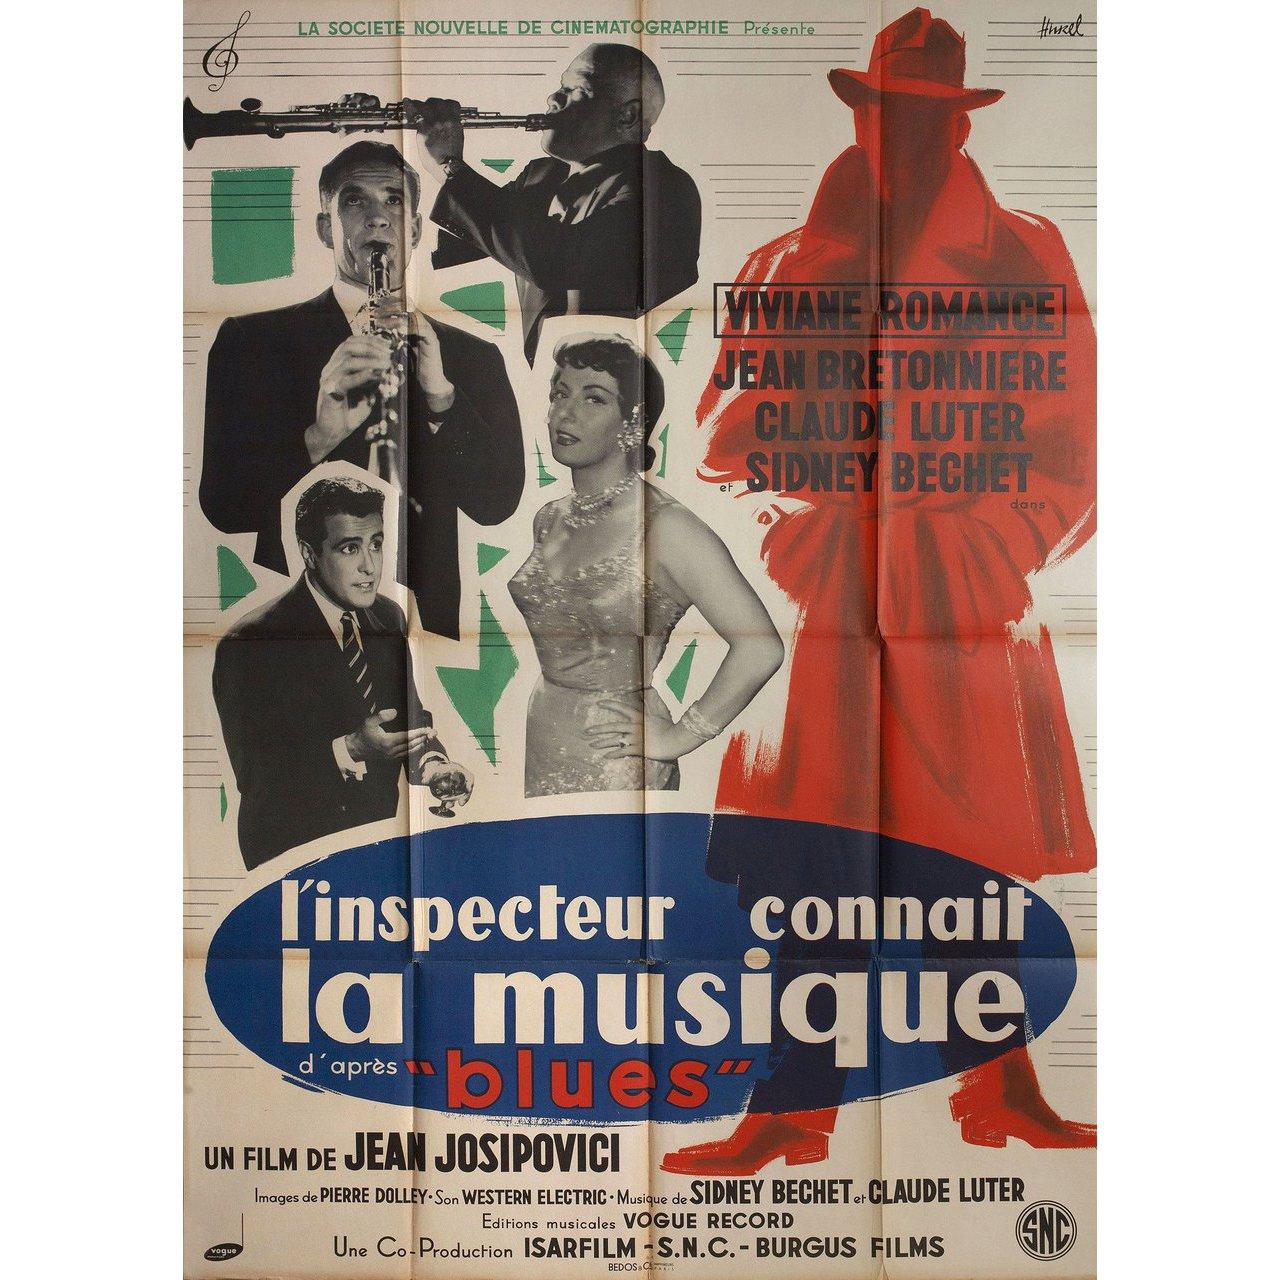 Mid-20th Century L'inspecteur connait la musique 1956 French Grande Film Poster For Sale